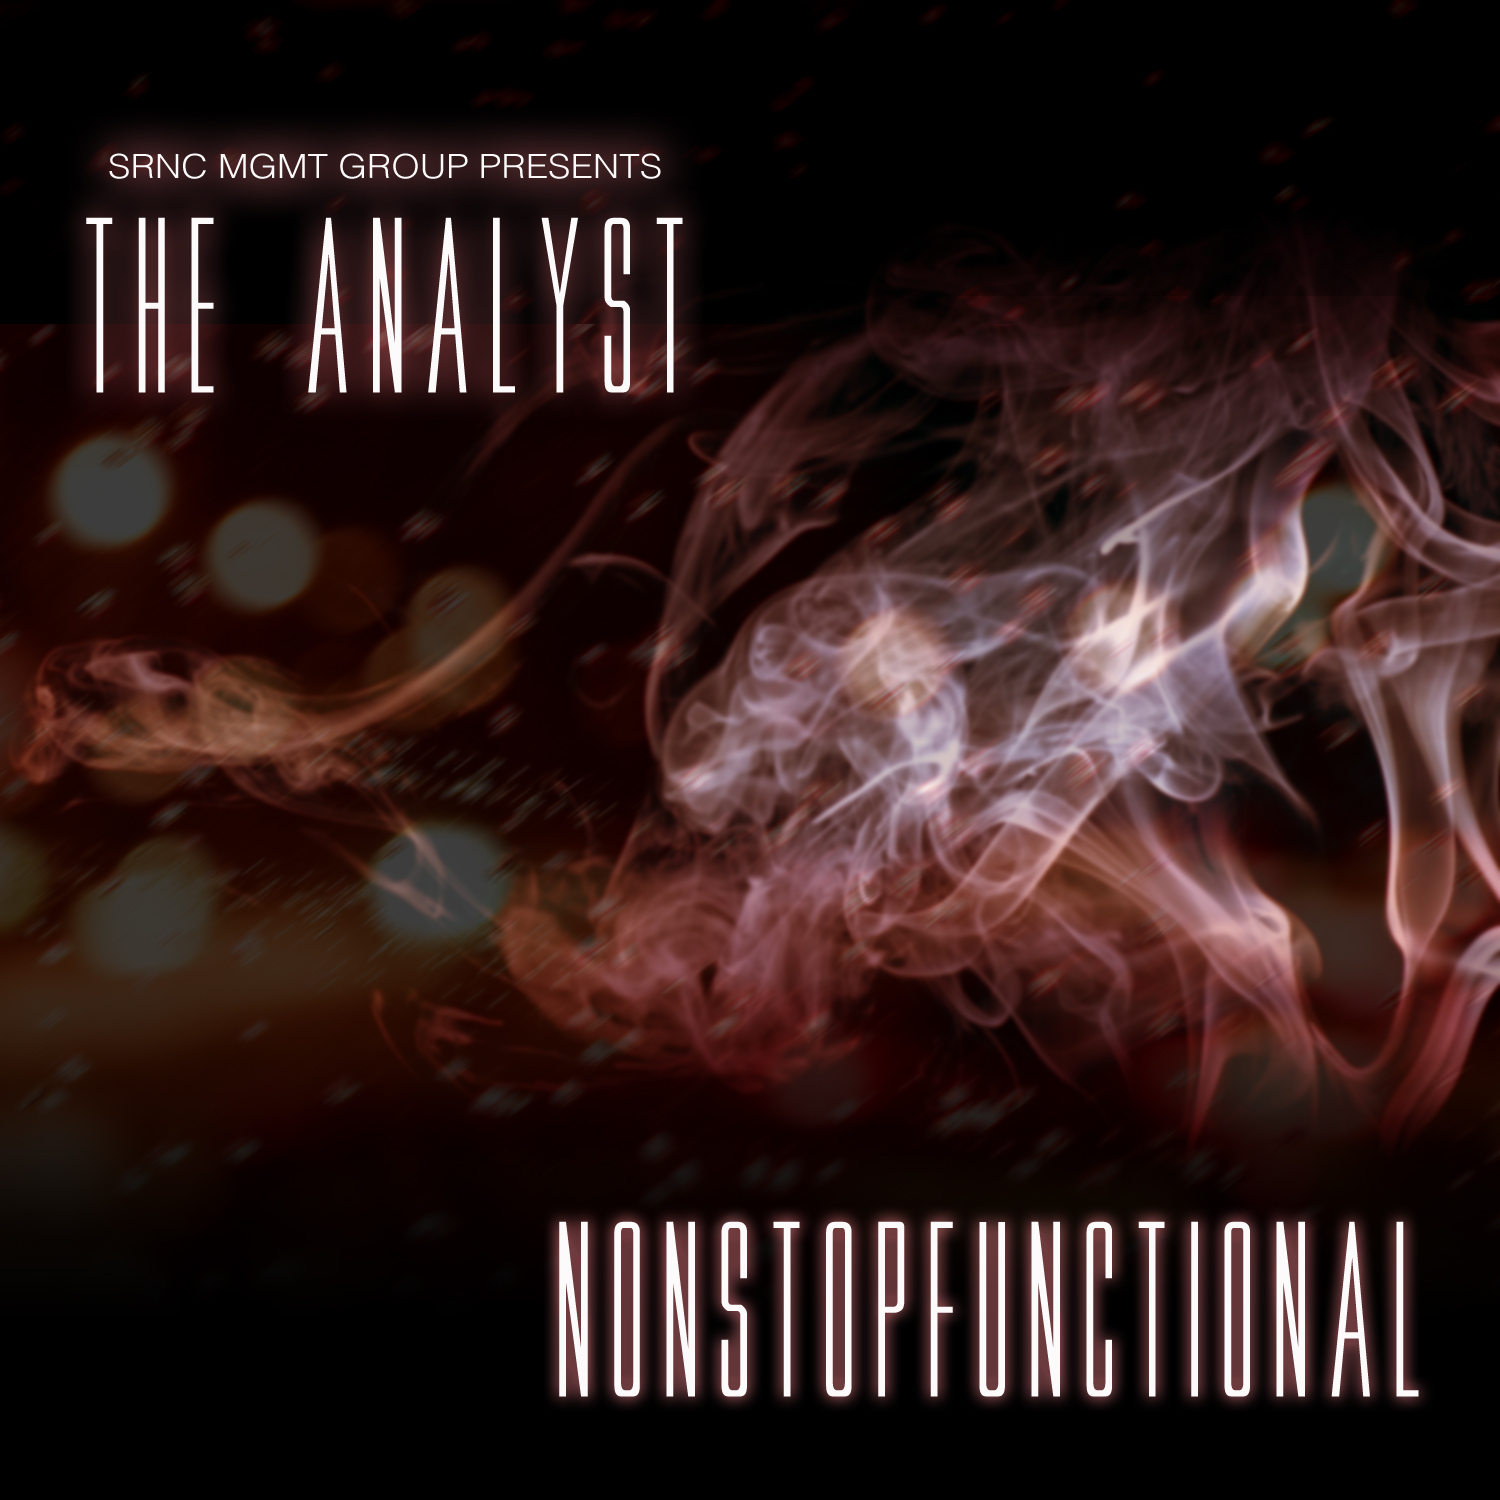 Analyst - "NONSTOPFUNCTIONAL" (Release)